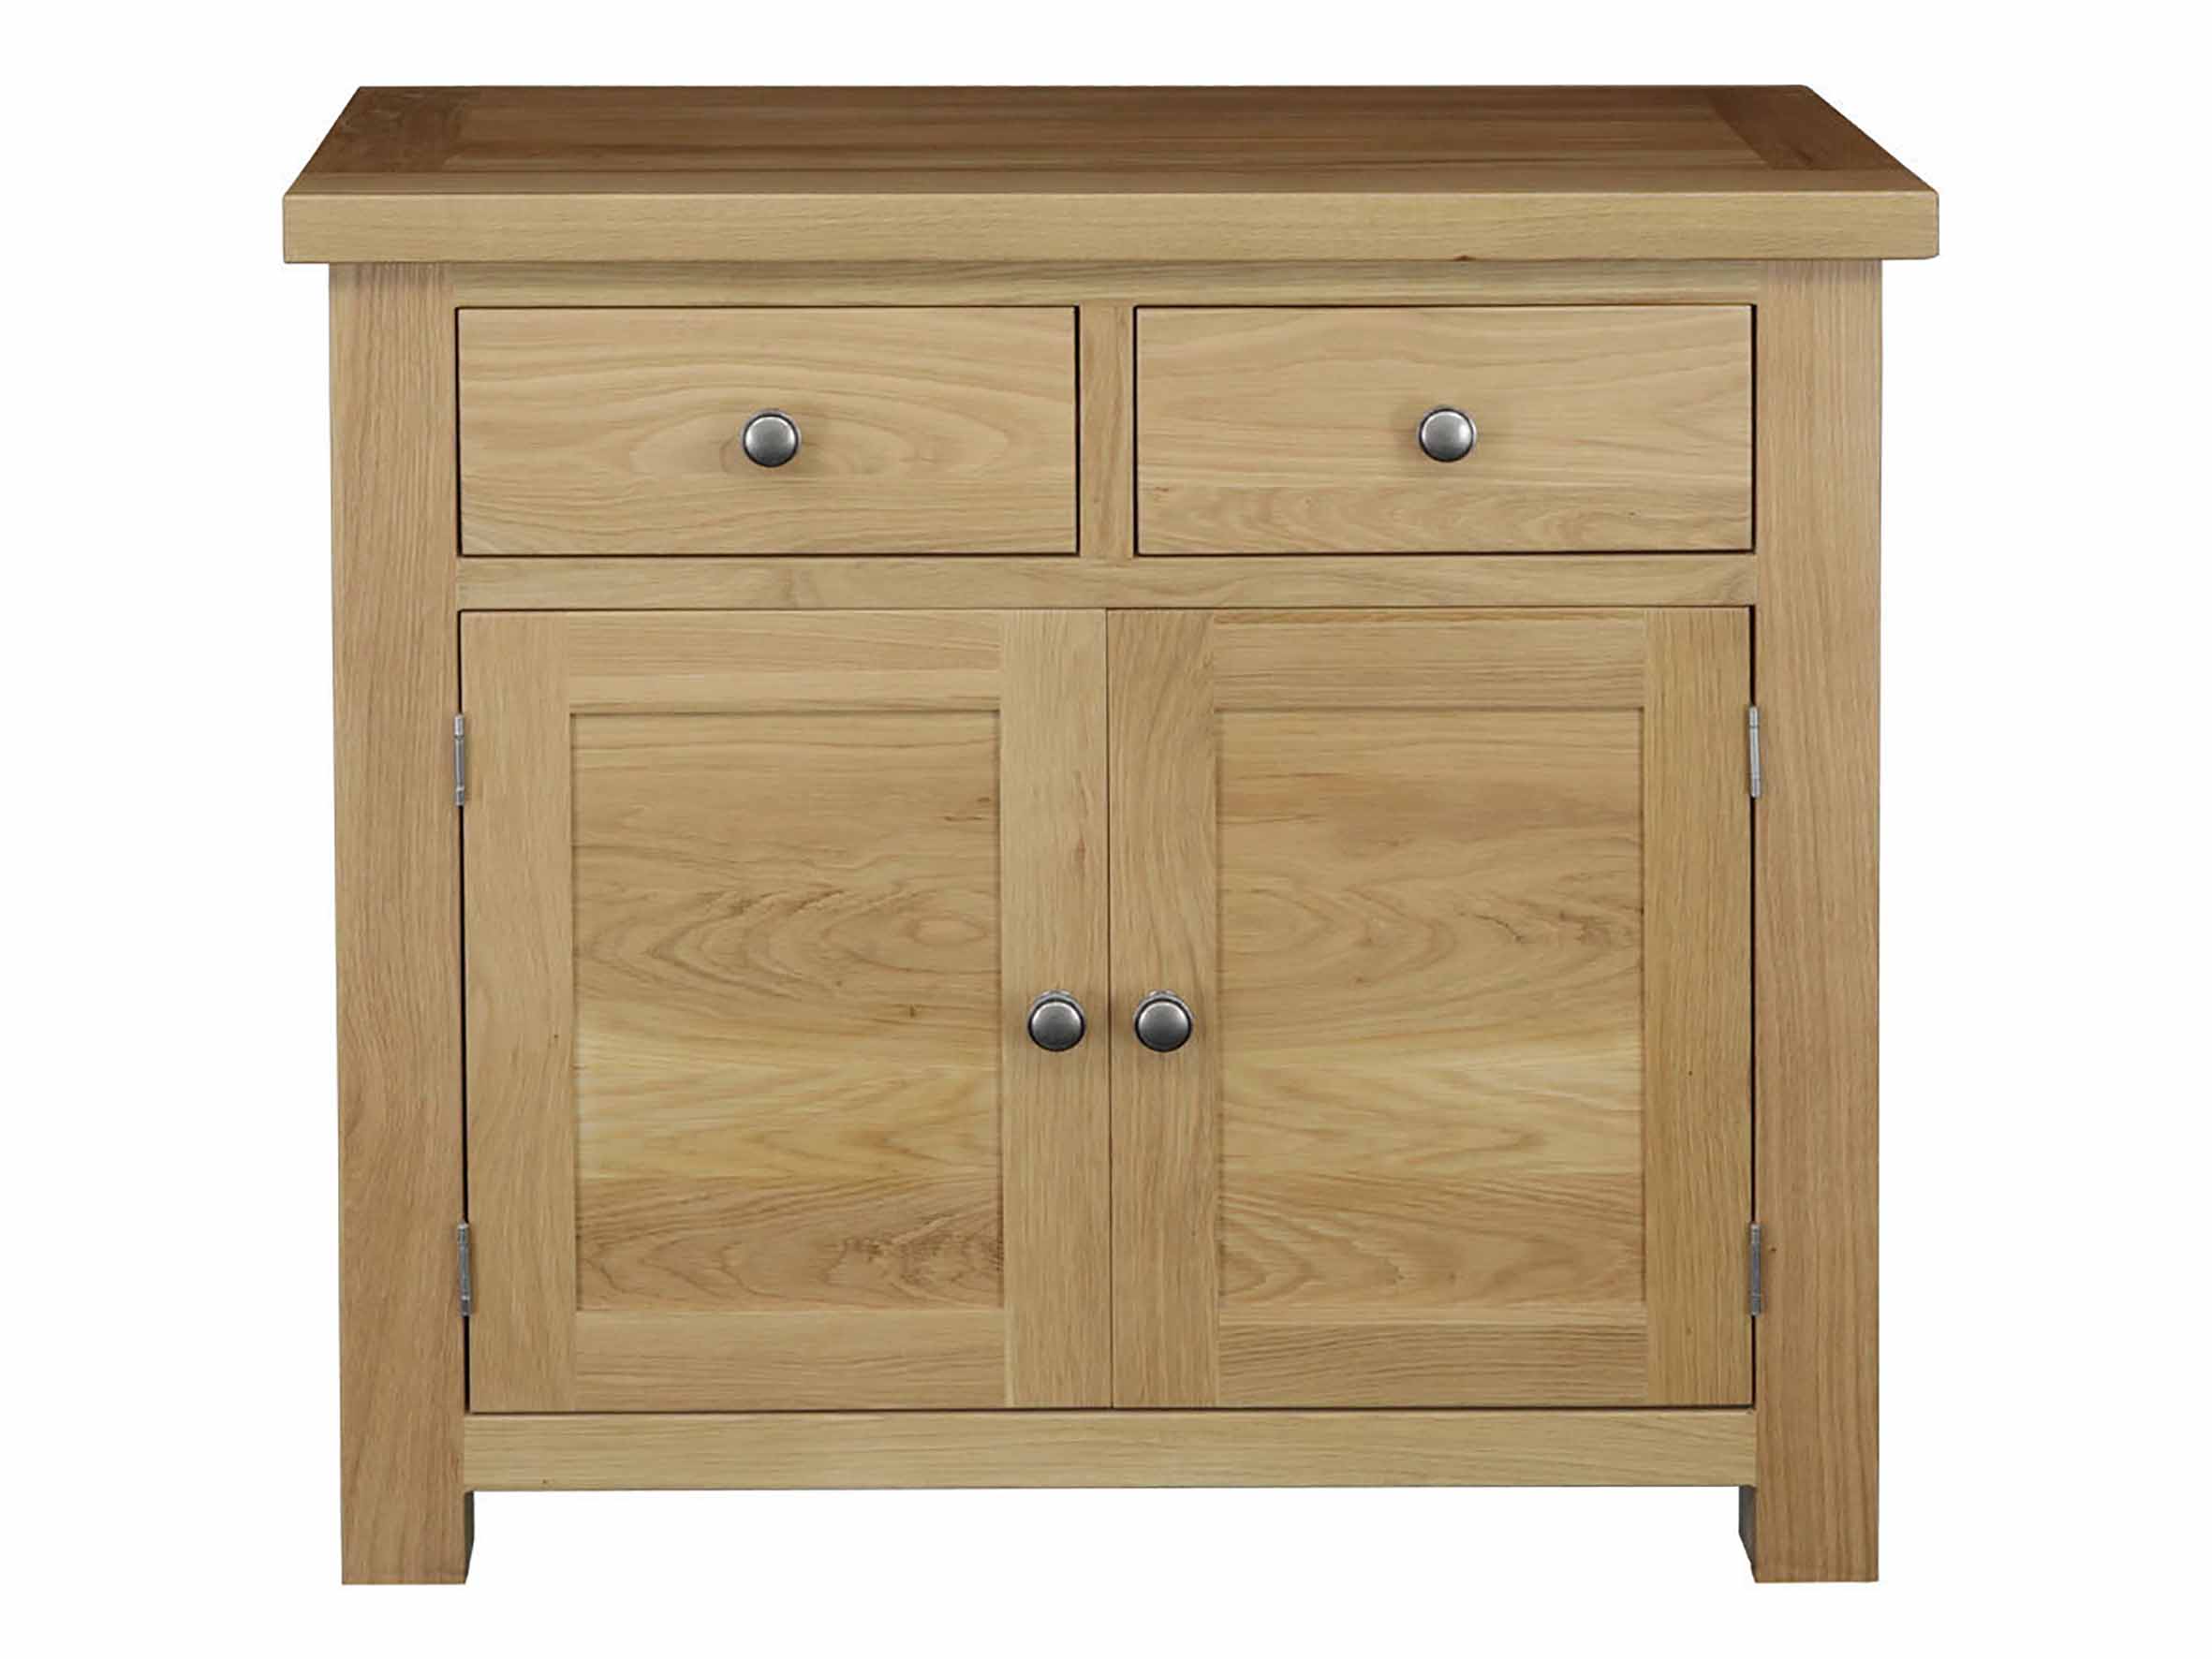 Eton Solid Oak Large Cabinet from Top Secret Furniture